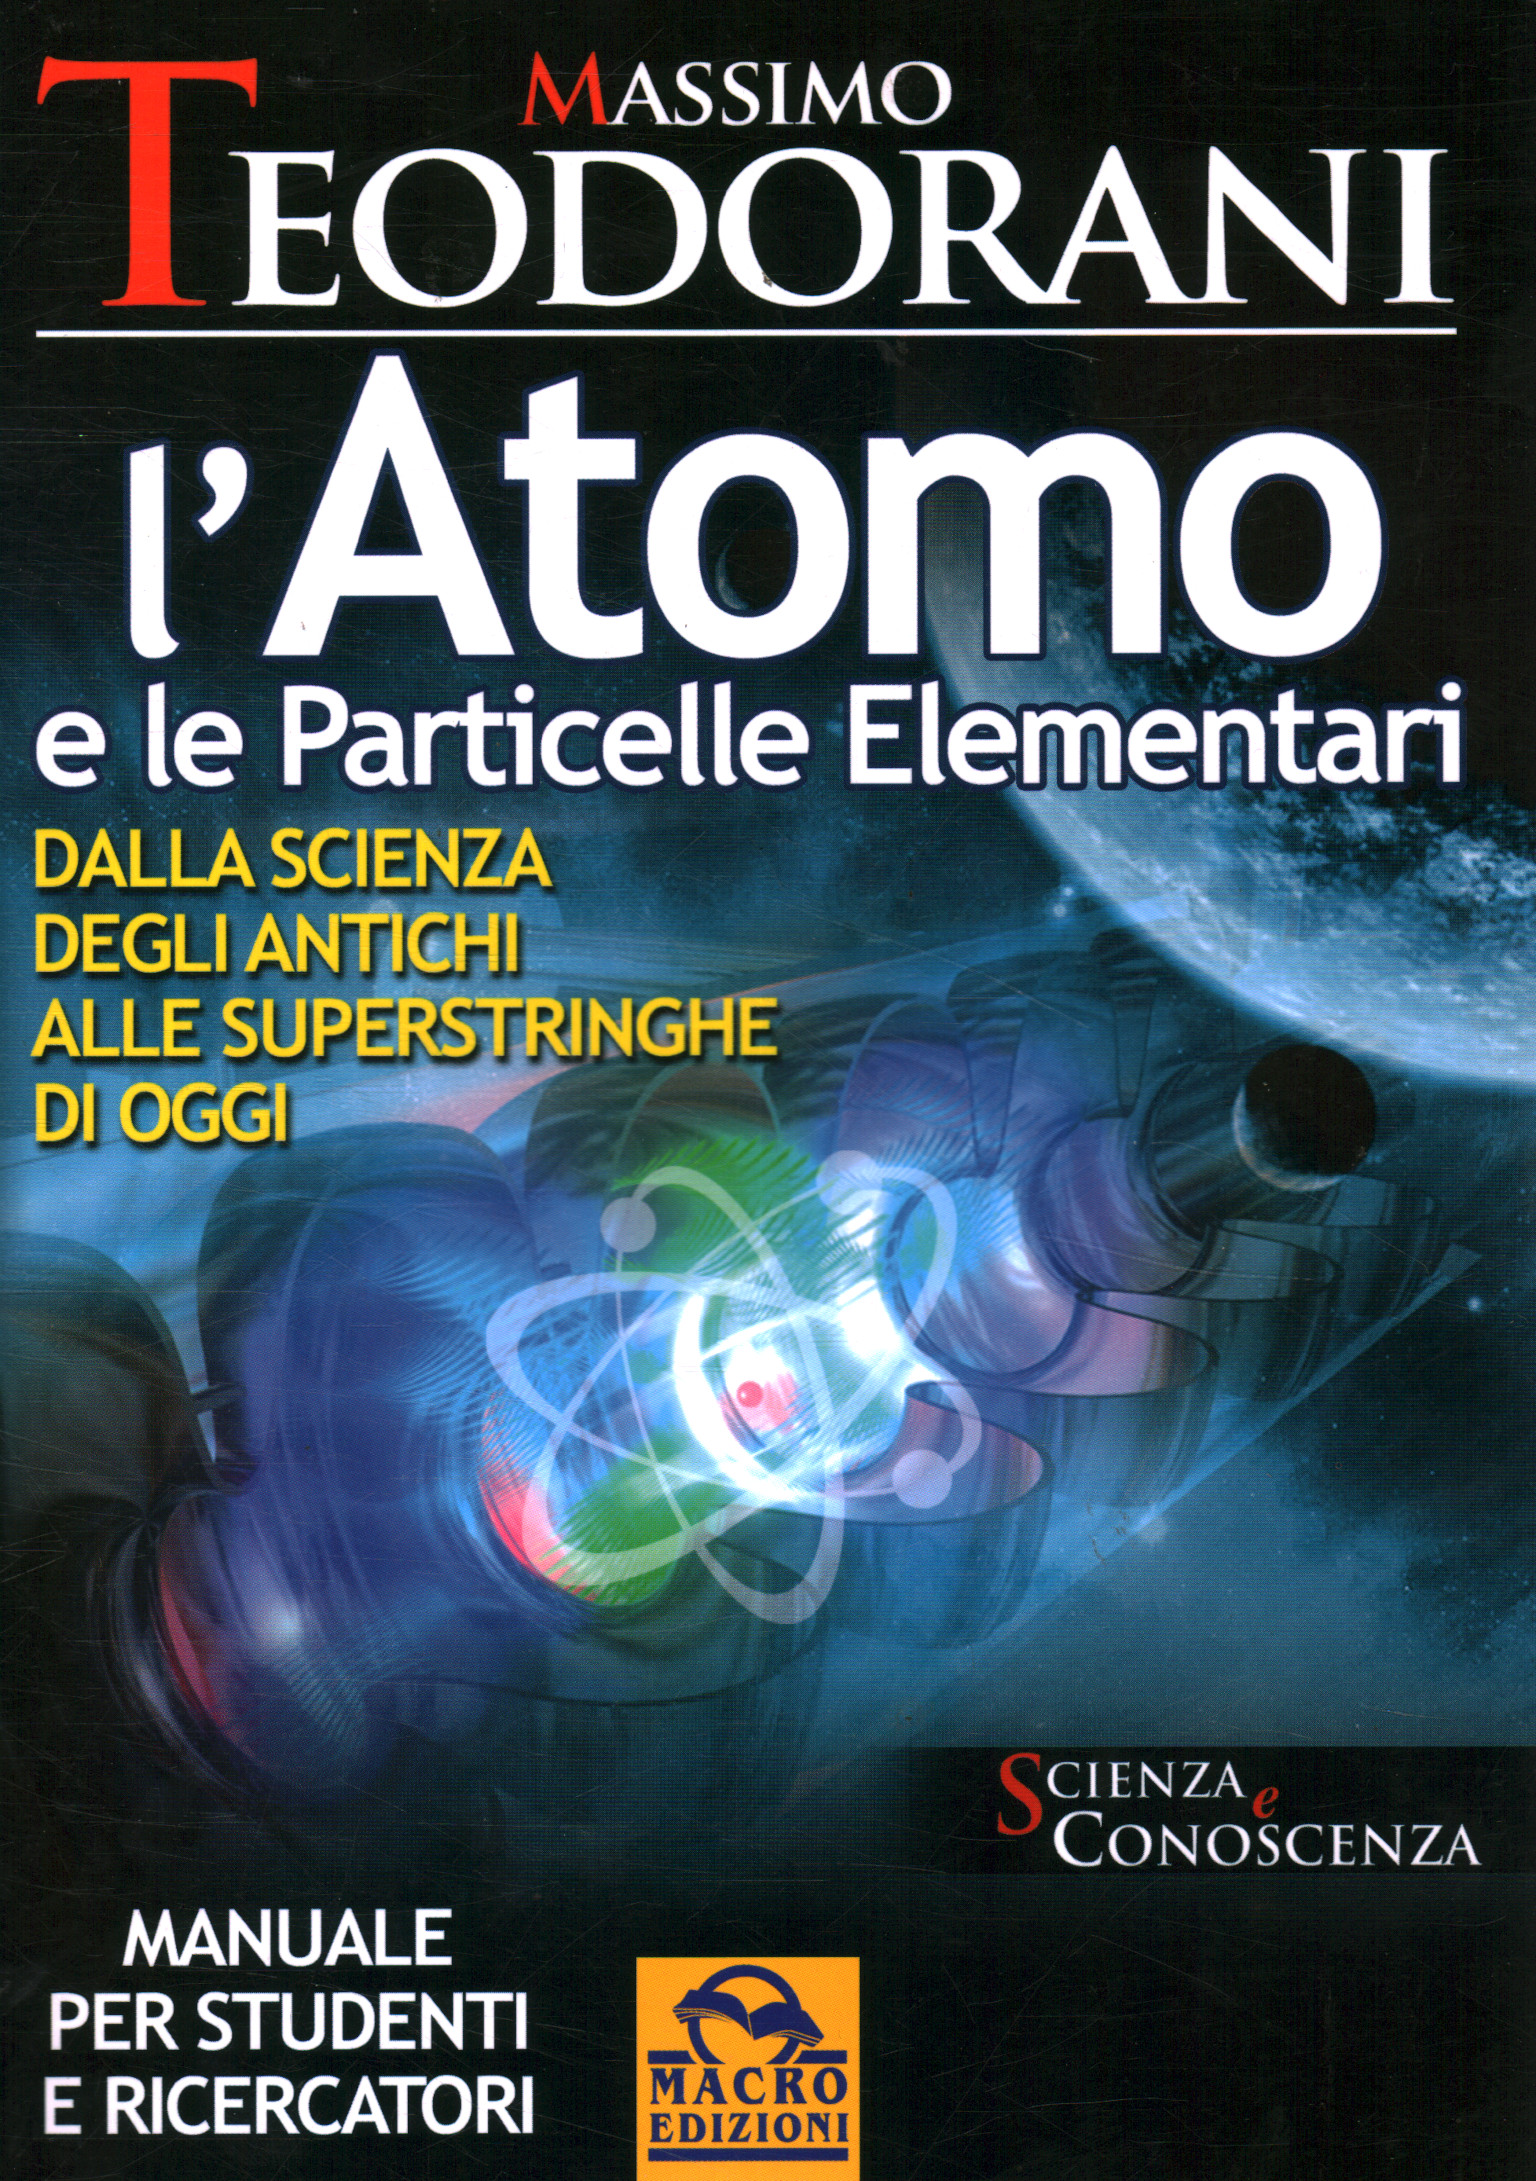 Das Atom und die Elementteilchen